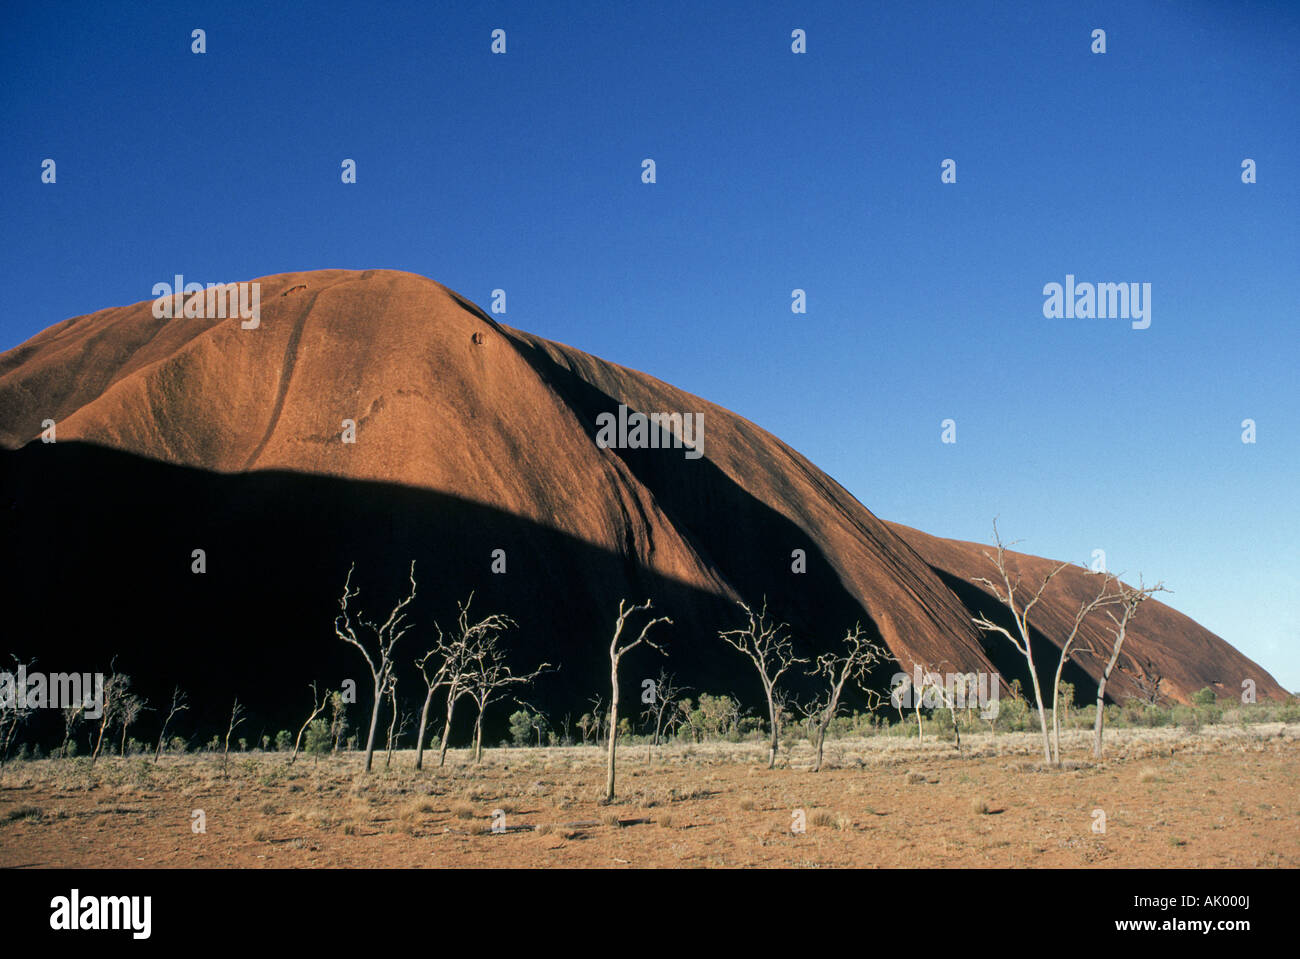 OUTBACK AUSTRALIE PACIFIQUE SUD Une vue de gommiers à Ayers Rock dans l'outback australien Banque D'Images